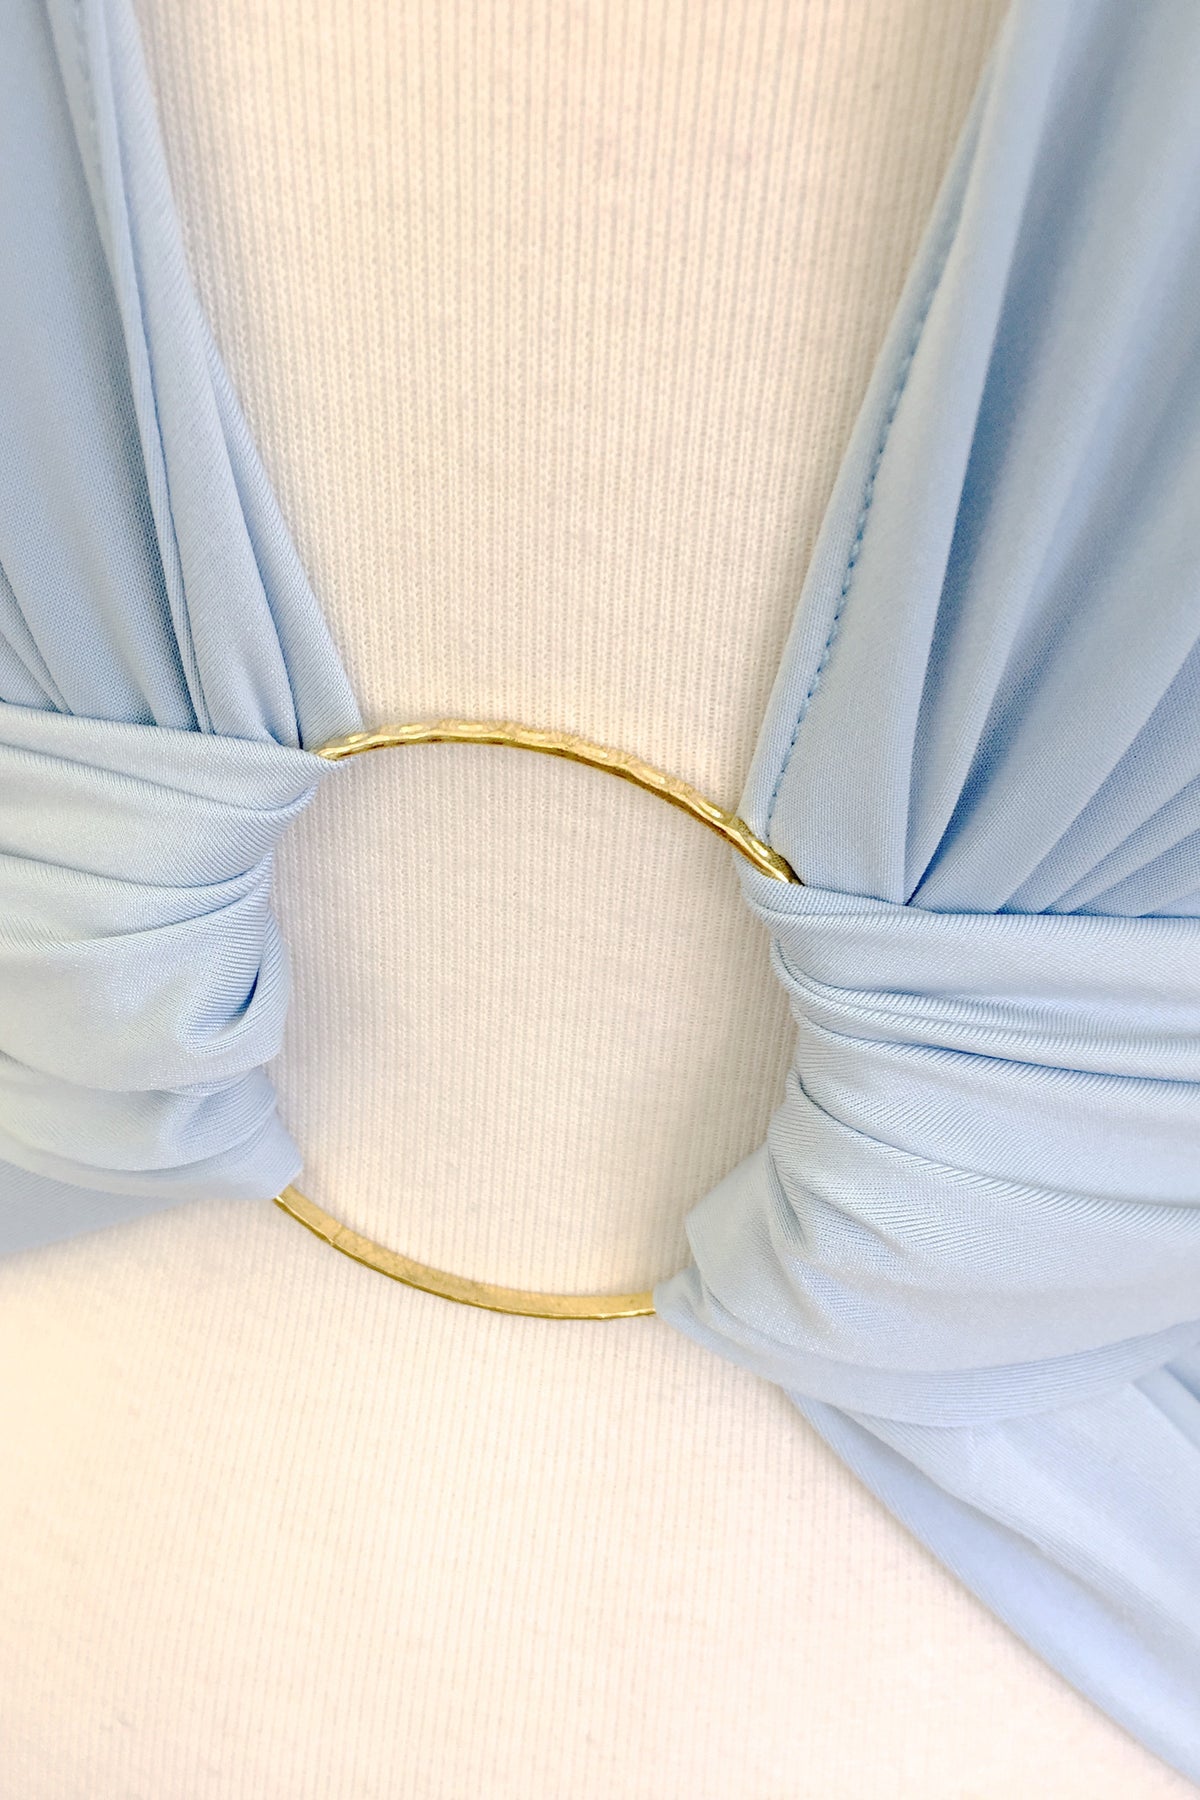 Diane Kroe Gold  Bangle Bracelet with a Sash